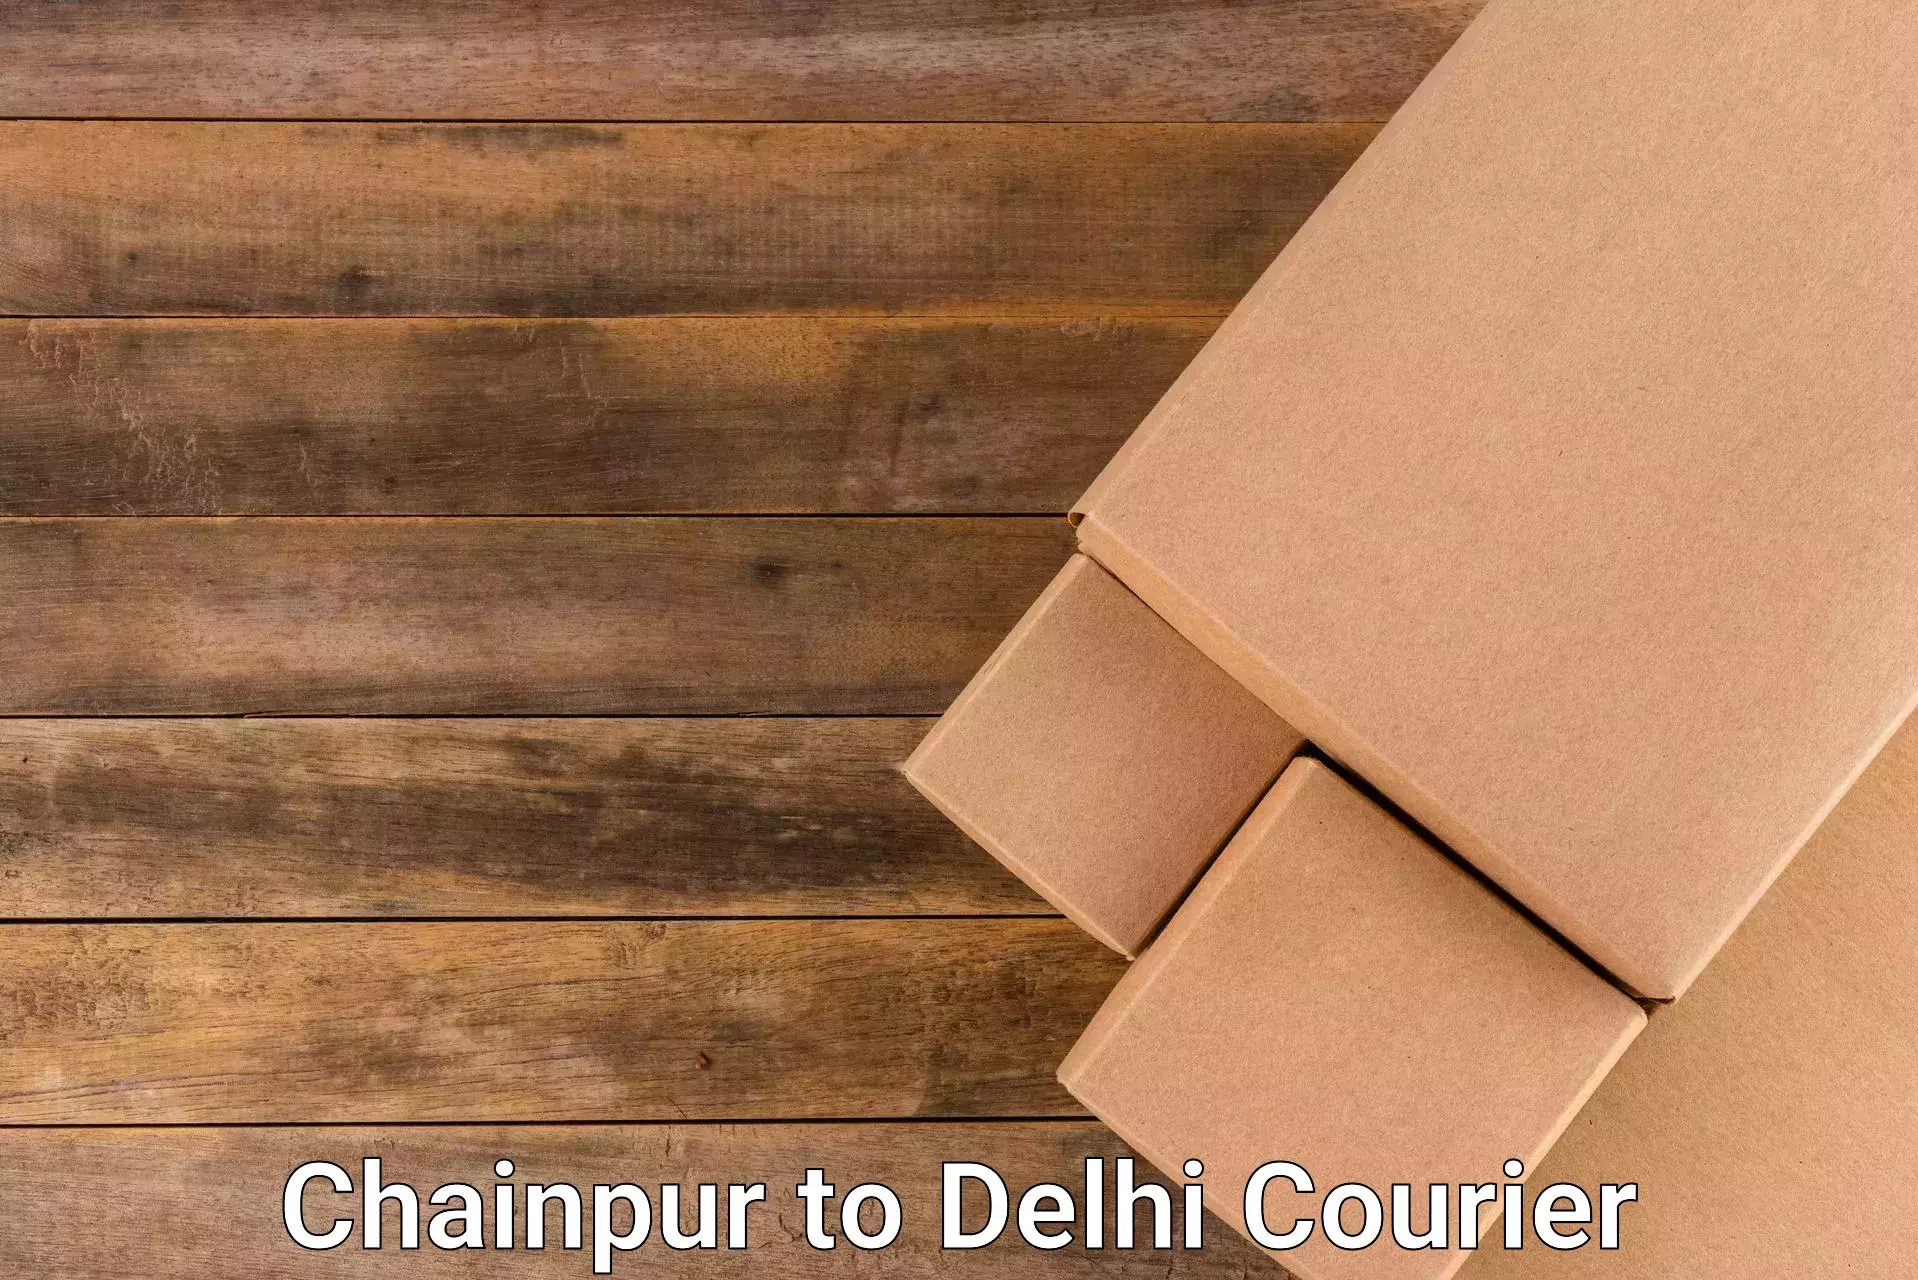 Efficient logistics management Chainpur to Ramesh Nagar